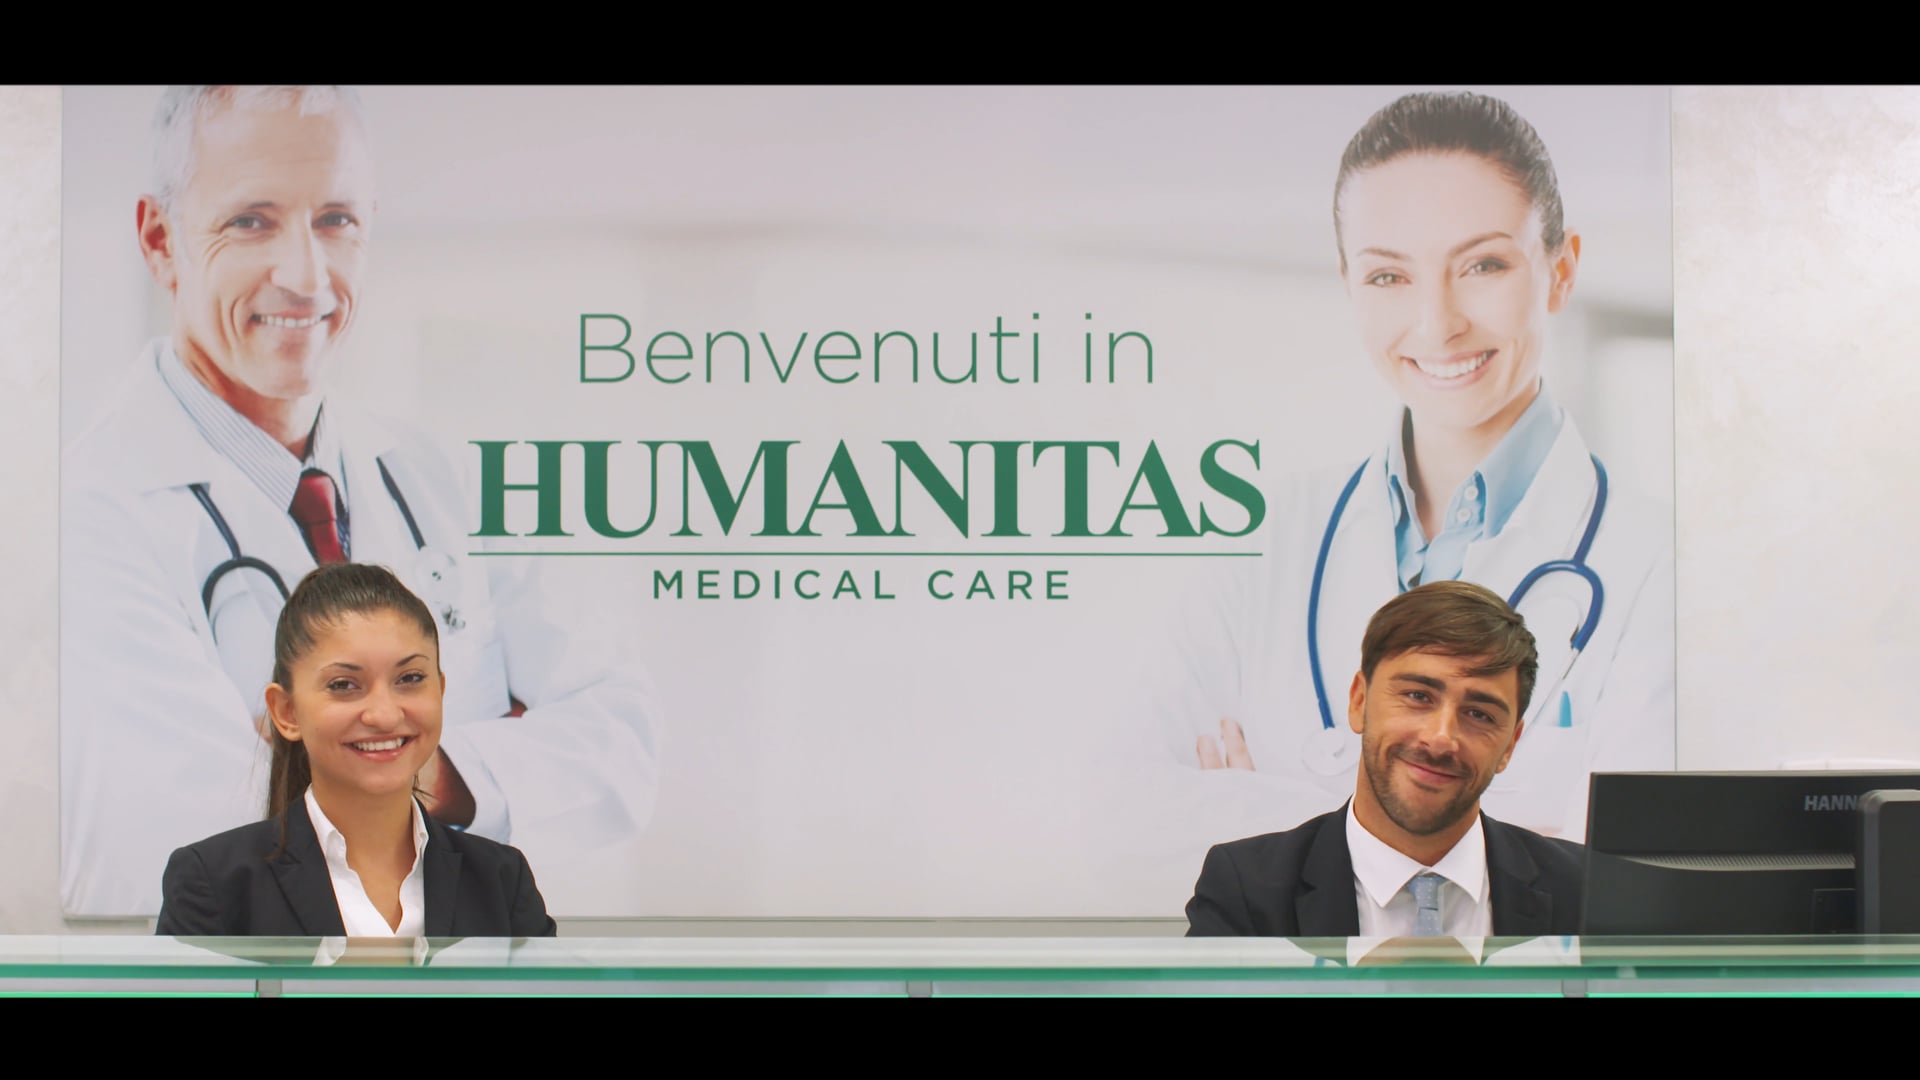 Humanitas Medical Care